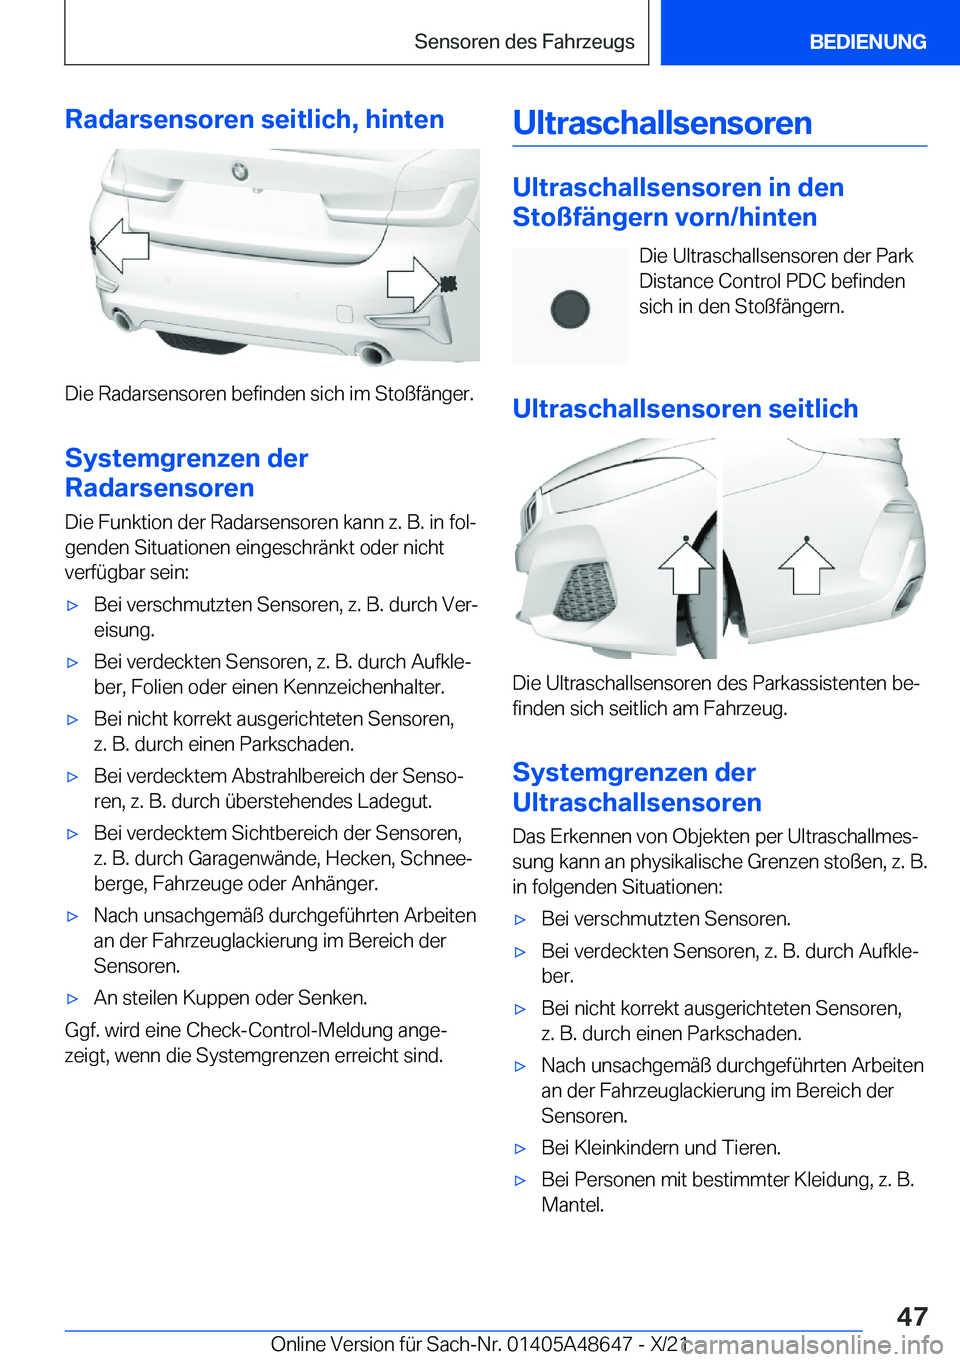 BMW 3 SERIES 2022  Betriebsanleitungen (in German) �R�a�d�a�r�s�e�n�s�o�r�e�n��s�e�i�t�l�i�c�h�,��h�i�n�t�e�n
�D�i�e��R�a�d�a�r�s�e�n�s�o�r�e�n��b�e�f�i�n�d�e�n��s�i�c�h��i�m��S�t�o�